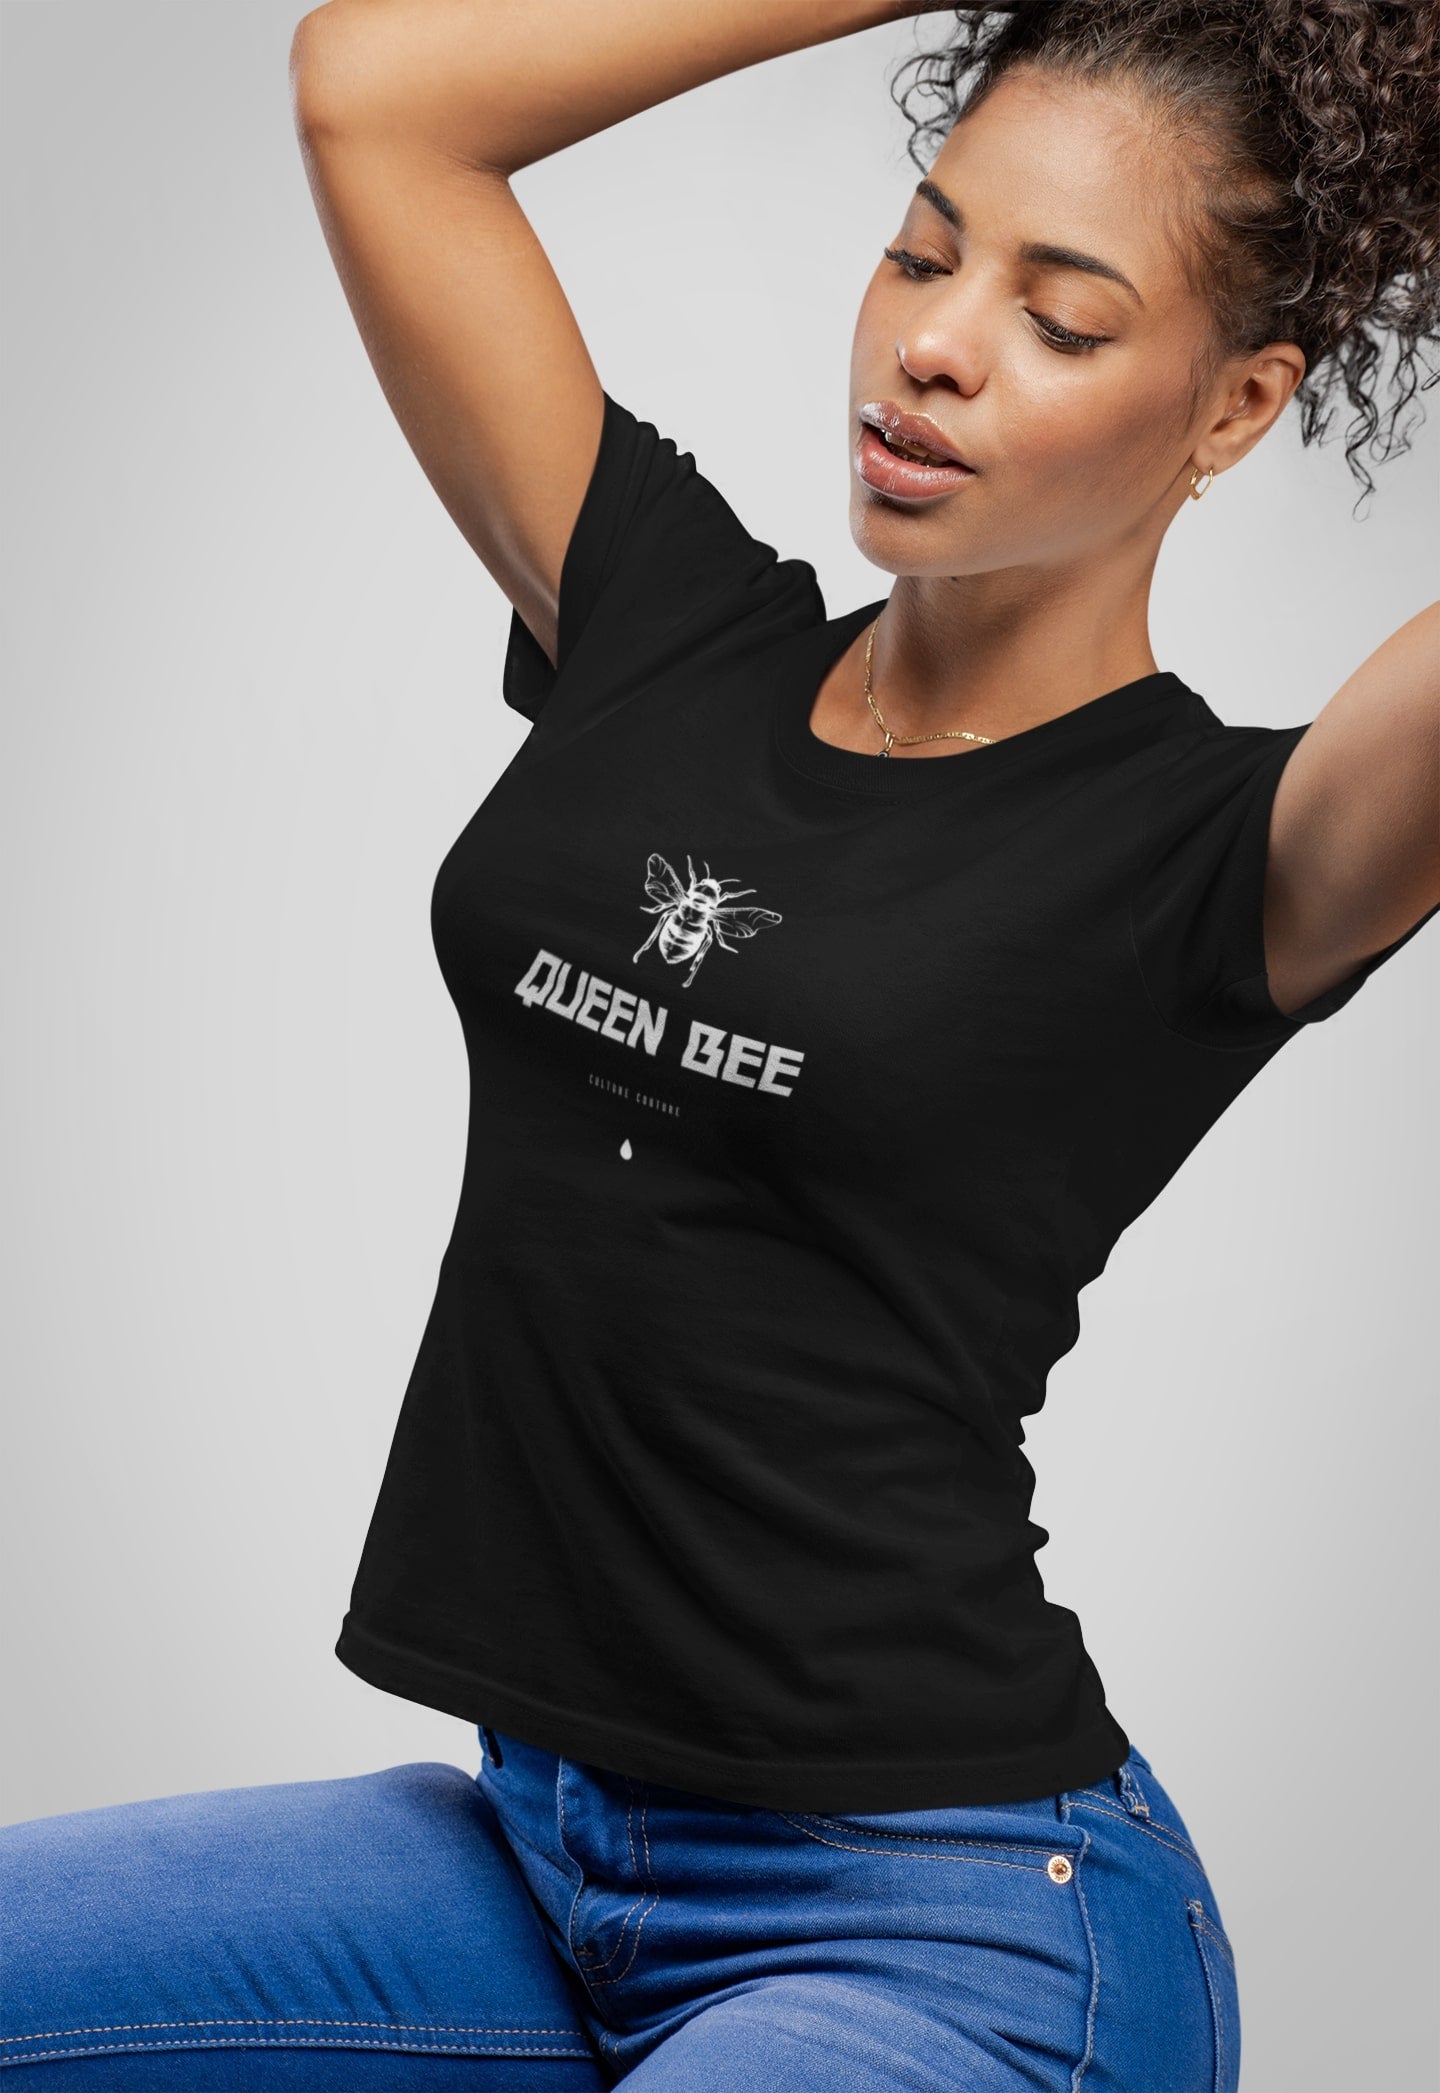 Queen Bee T-Shirt/Black